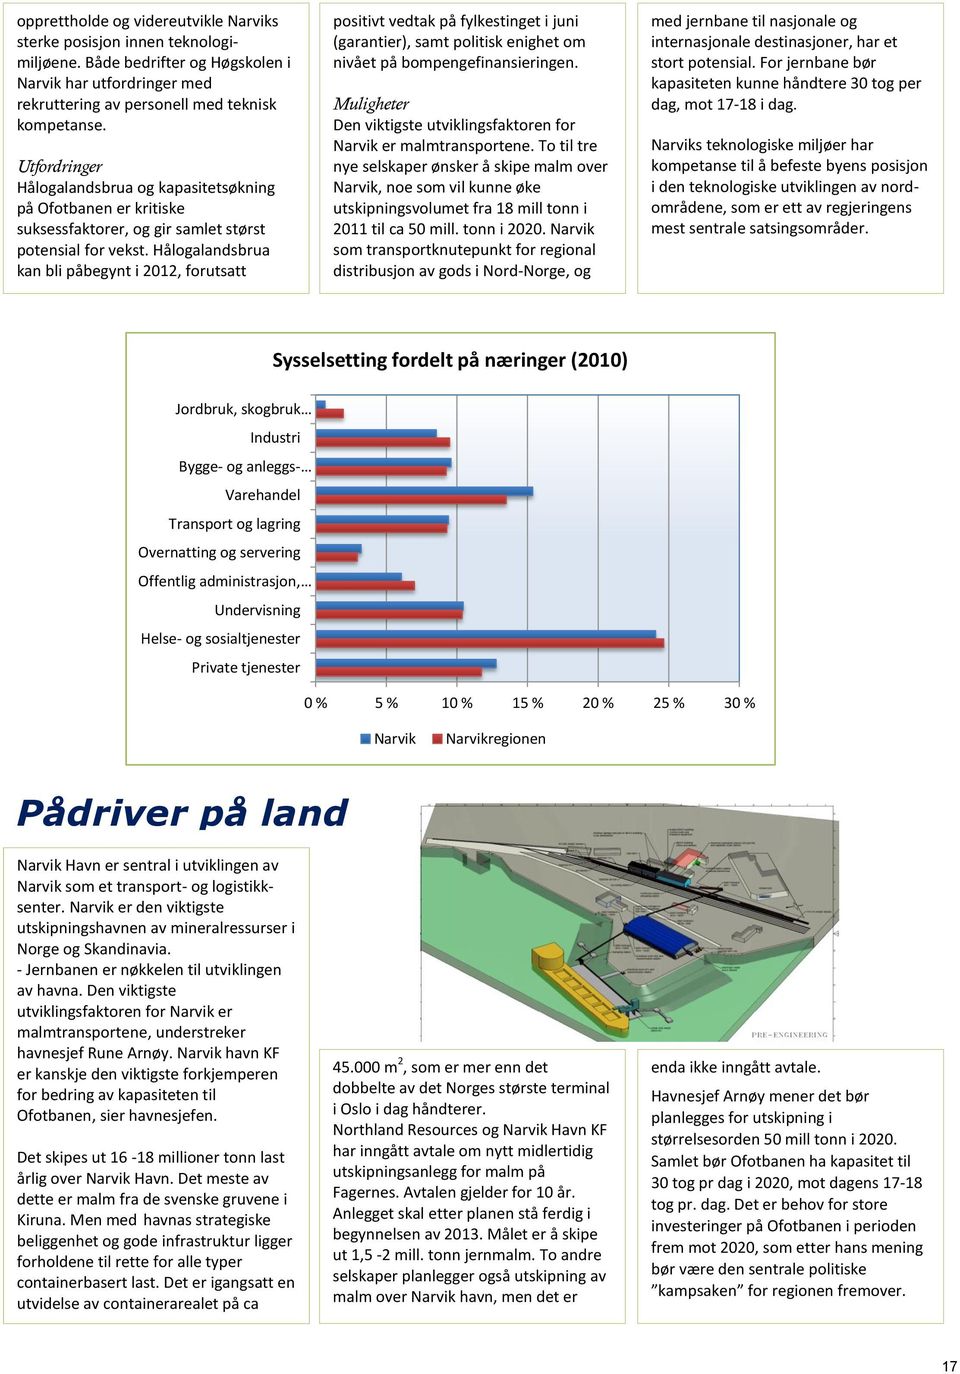 Utfordringer Hålogalandsbrua og kapasitetsøkning på Ofotbanen er kritiske suksessfaktorer, og gir samlet størst potensial for vekst.